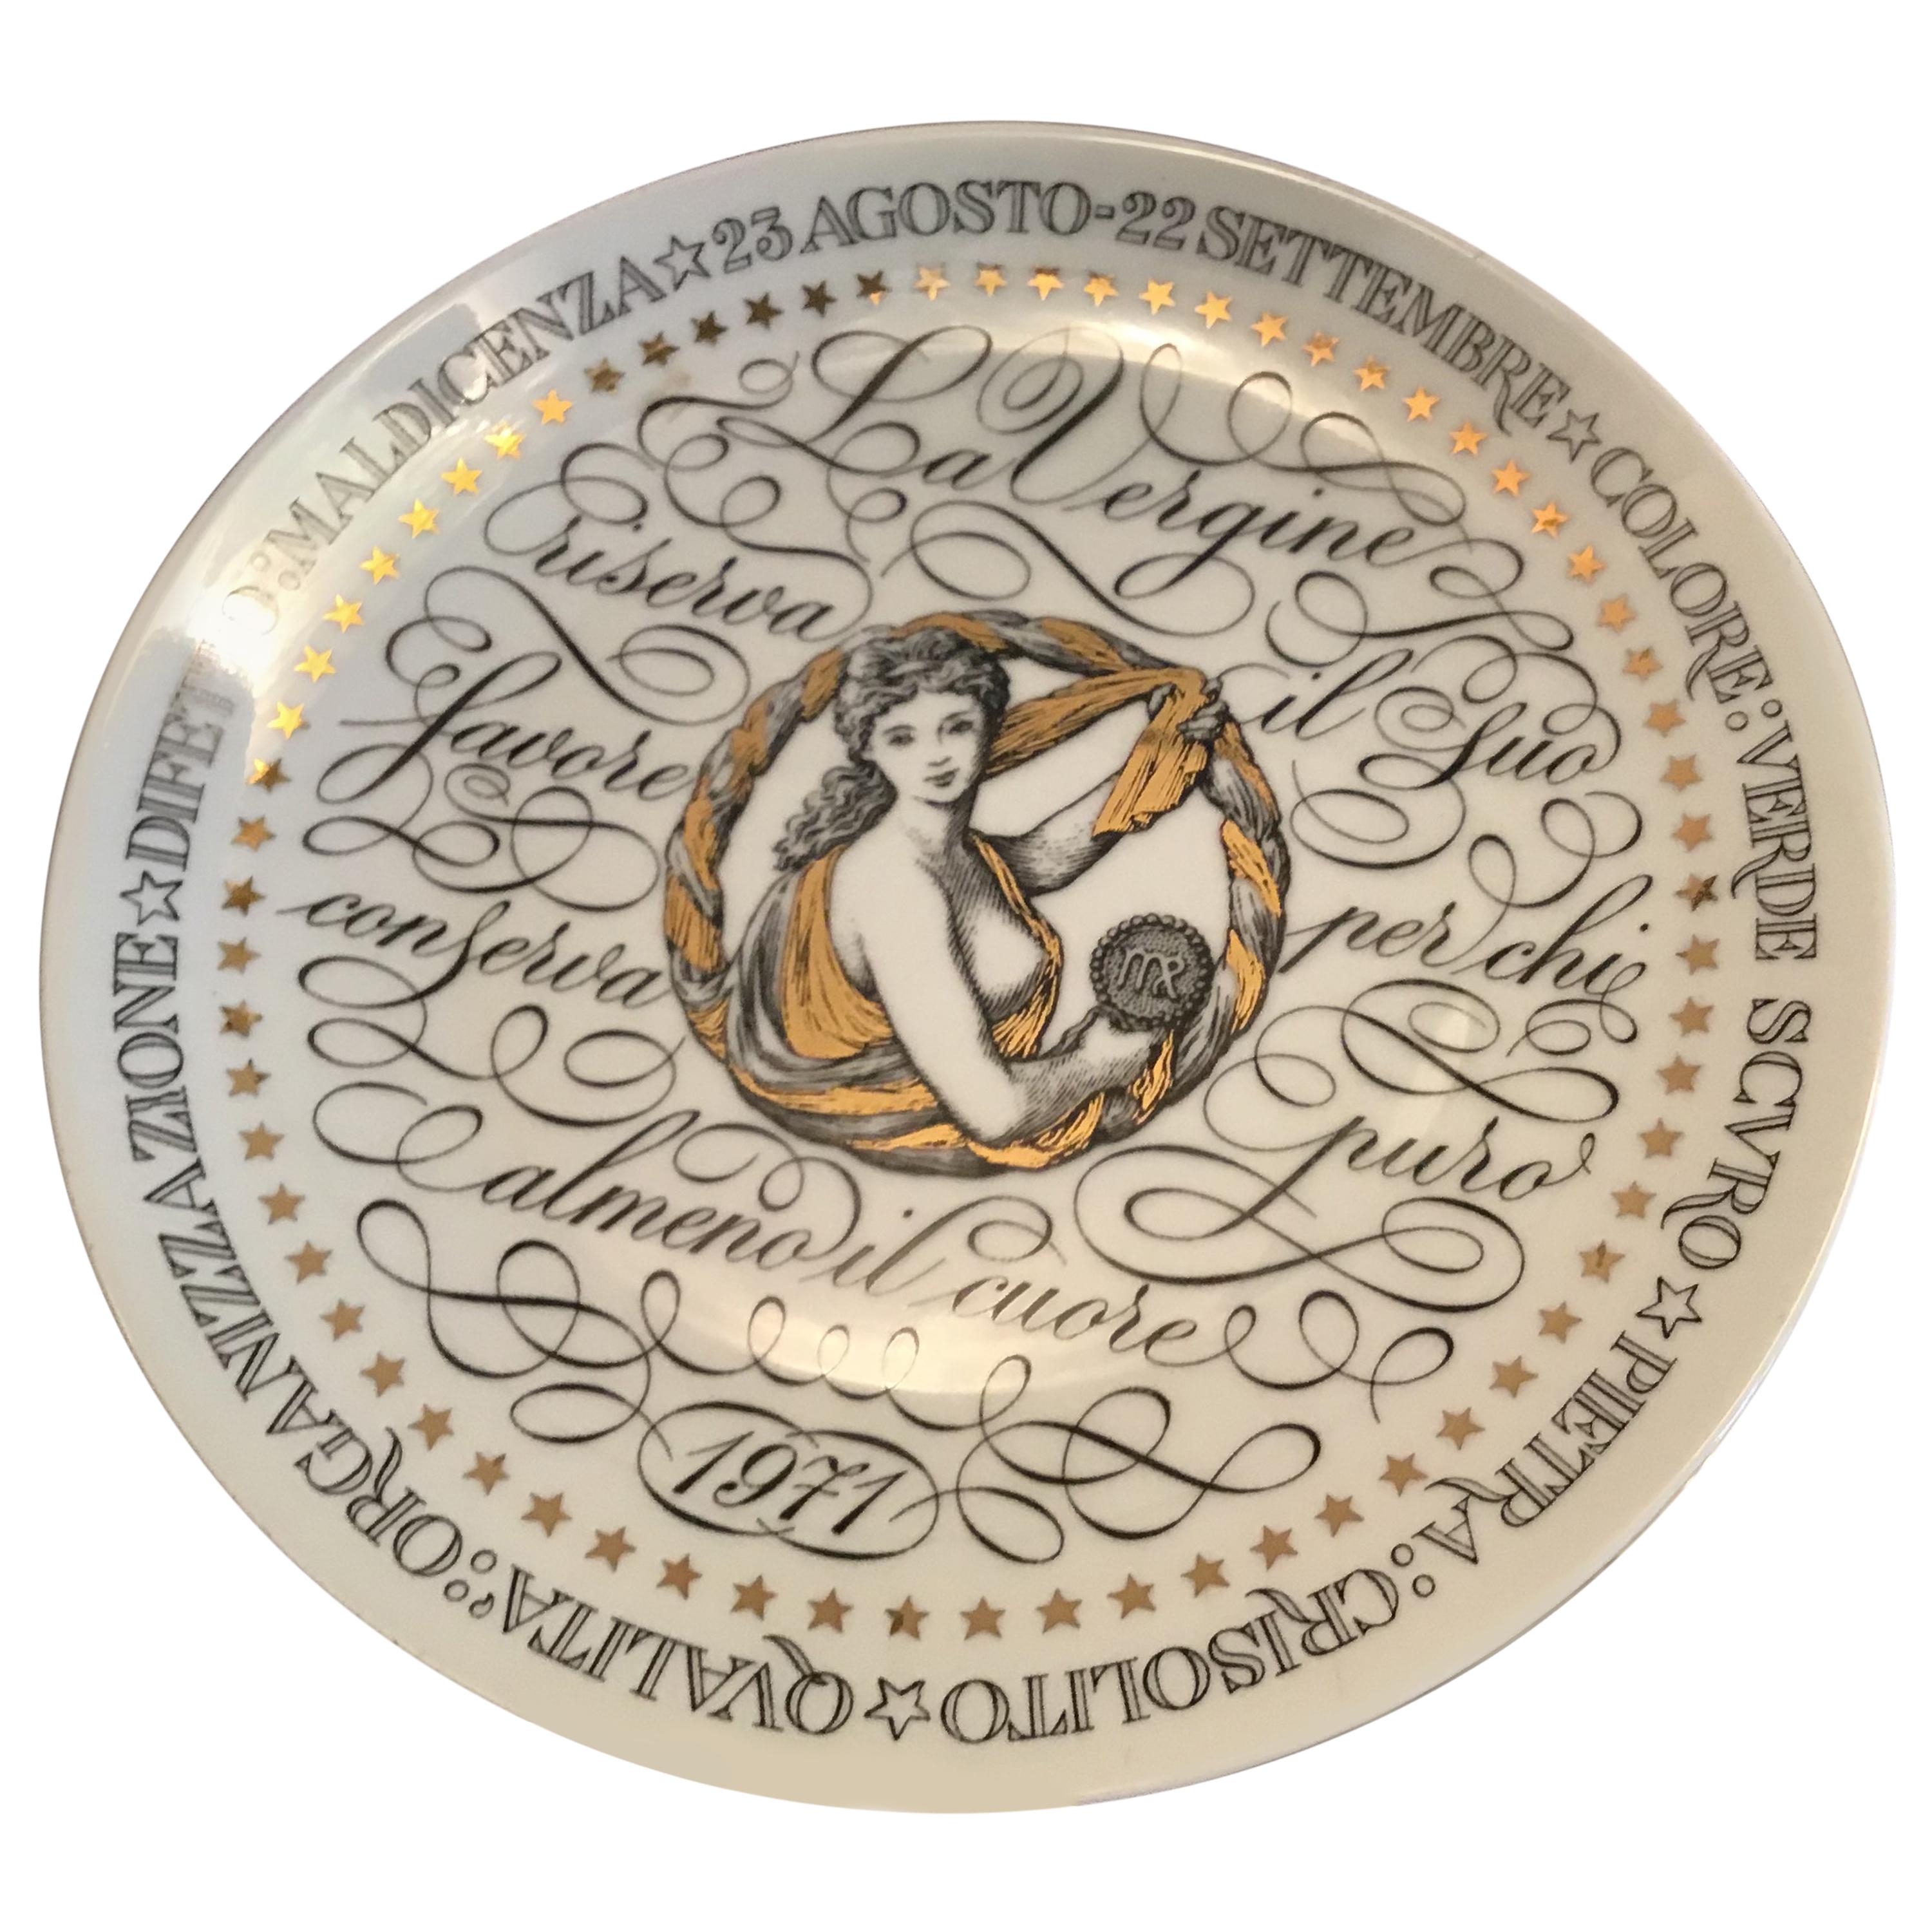 Fornasetti Plate Virgo Zodiac Sign Porcelain 1971 Italy